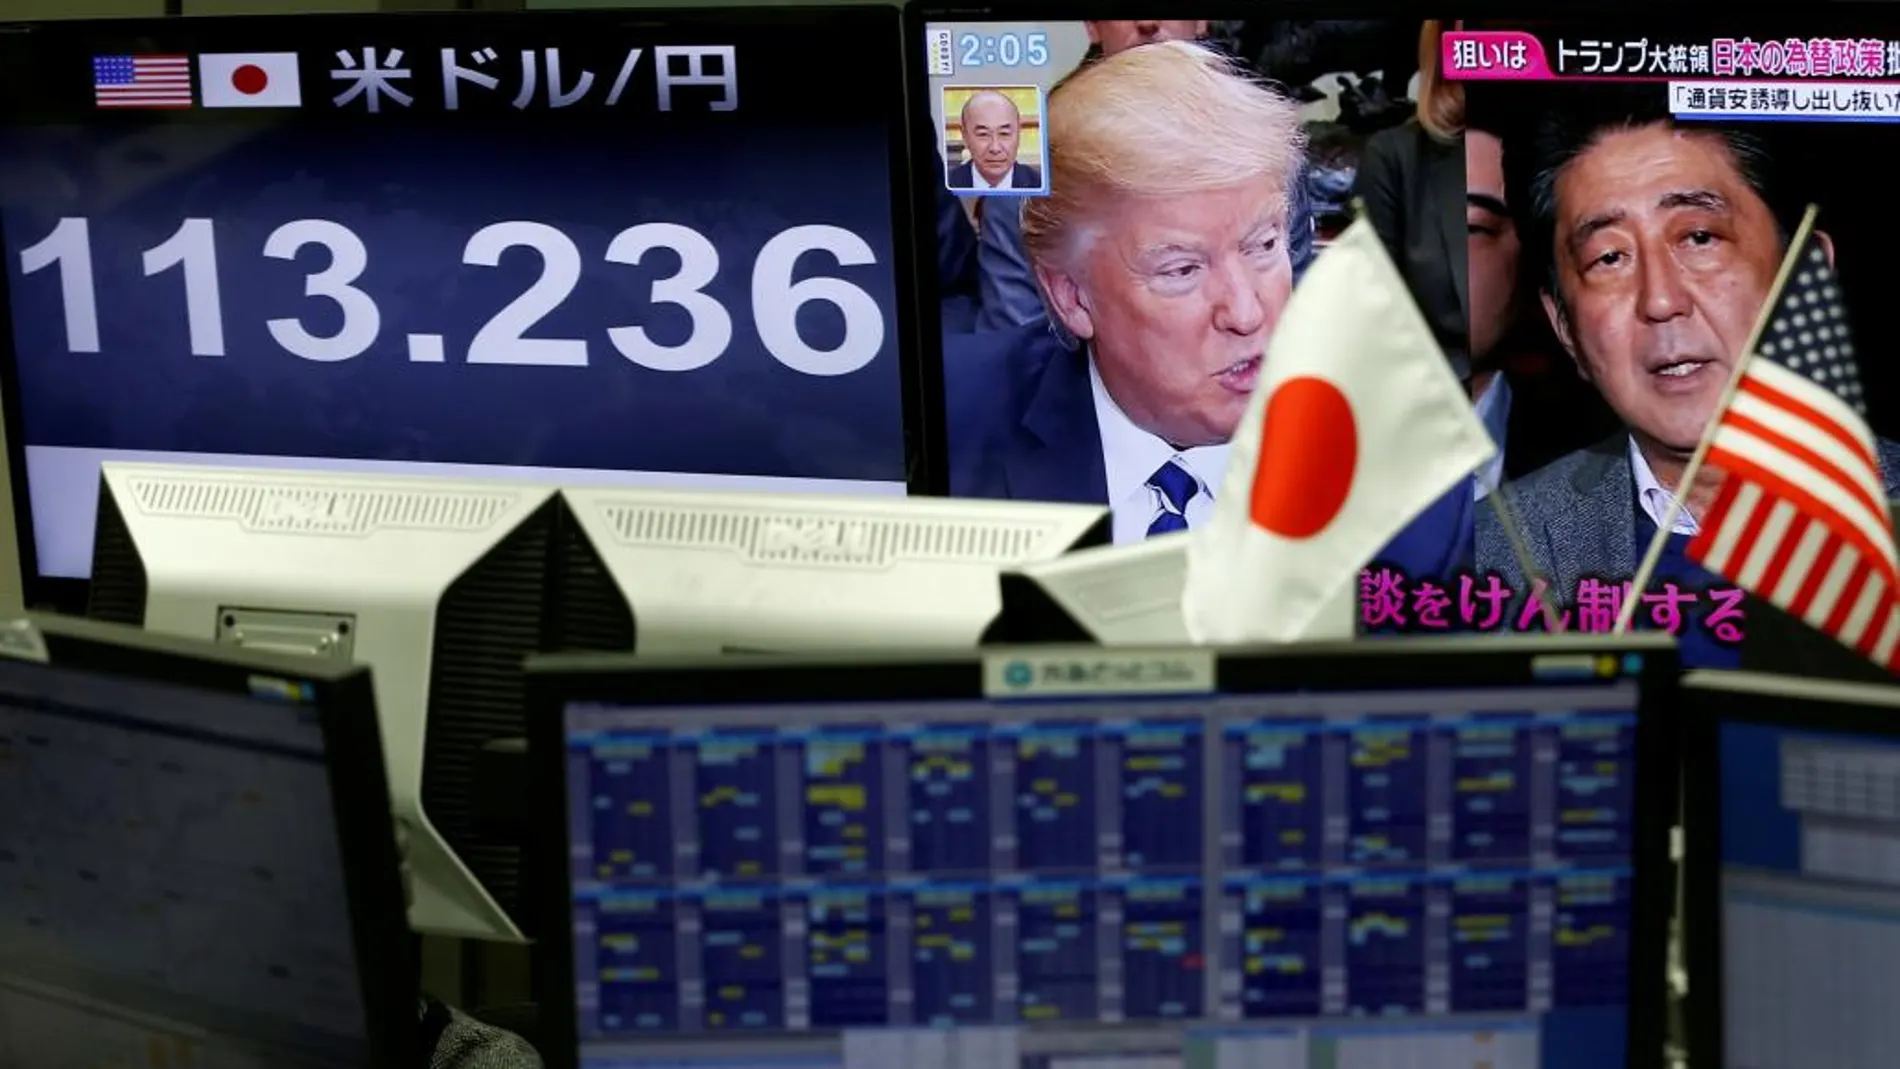 Un monitor de una casa de cambio de moneda muestra las imágenes de Trump y Abe